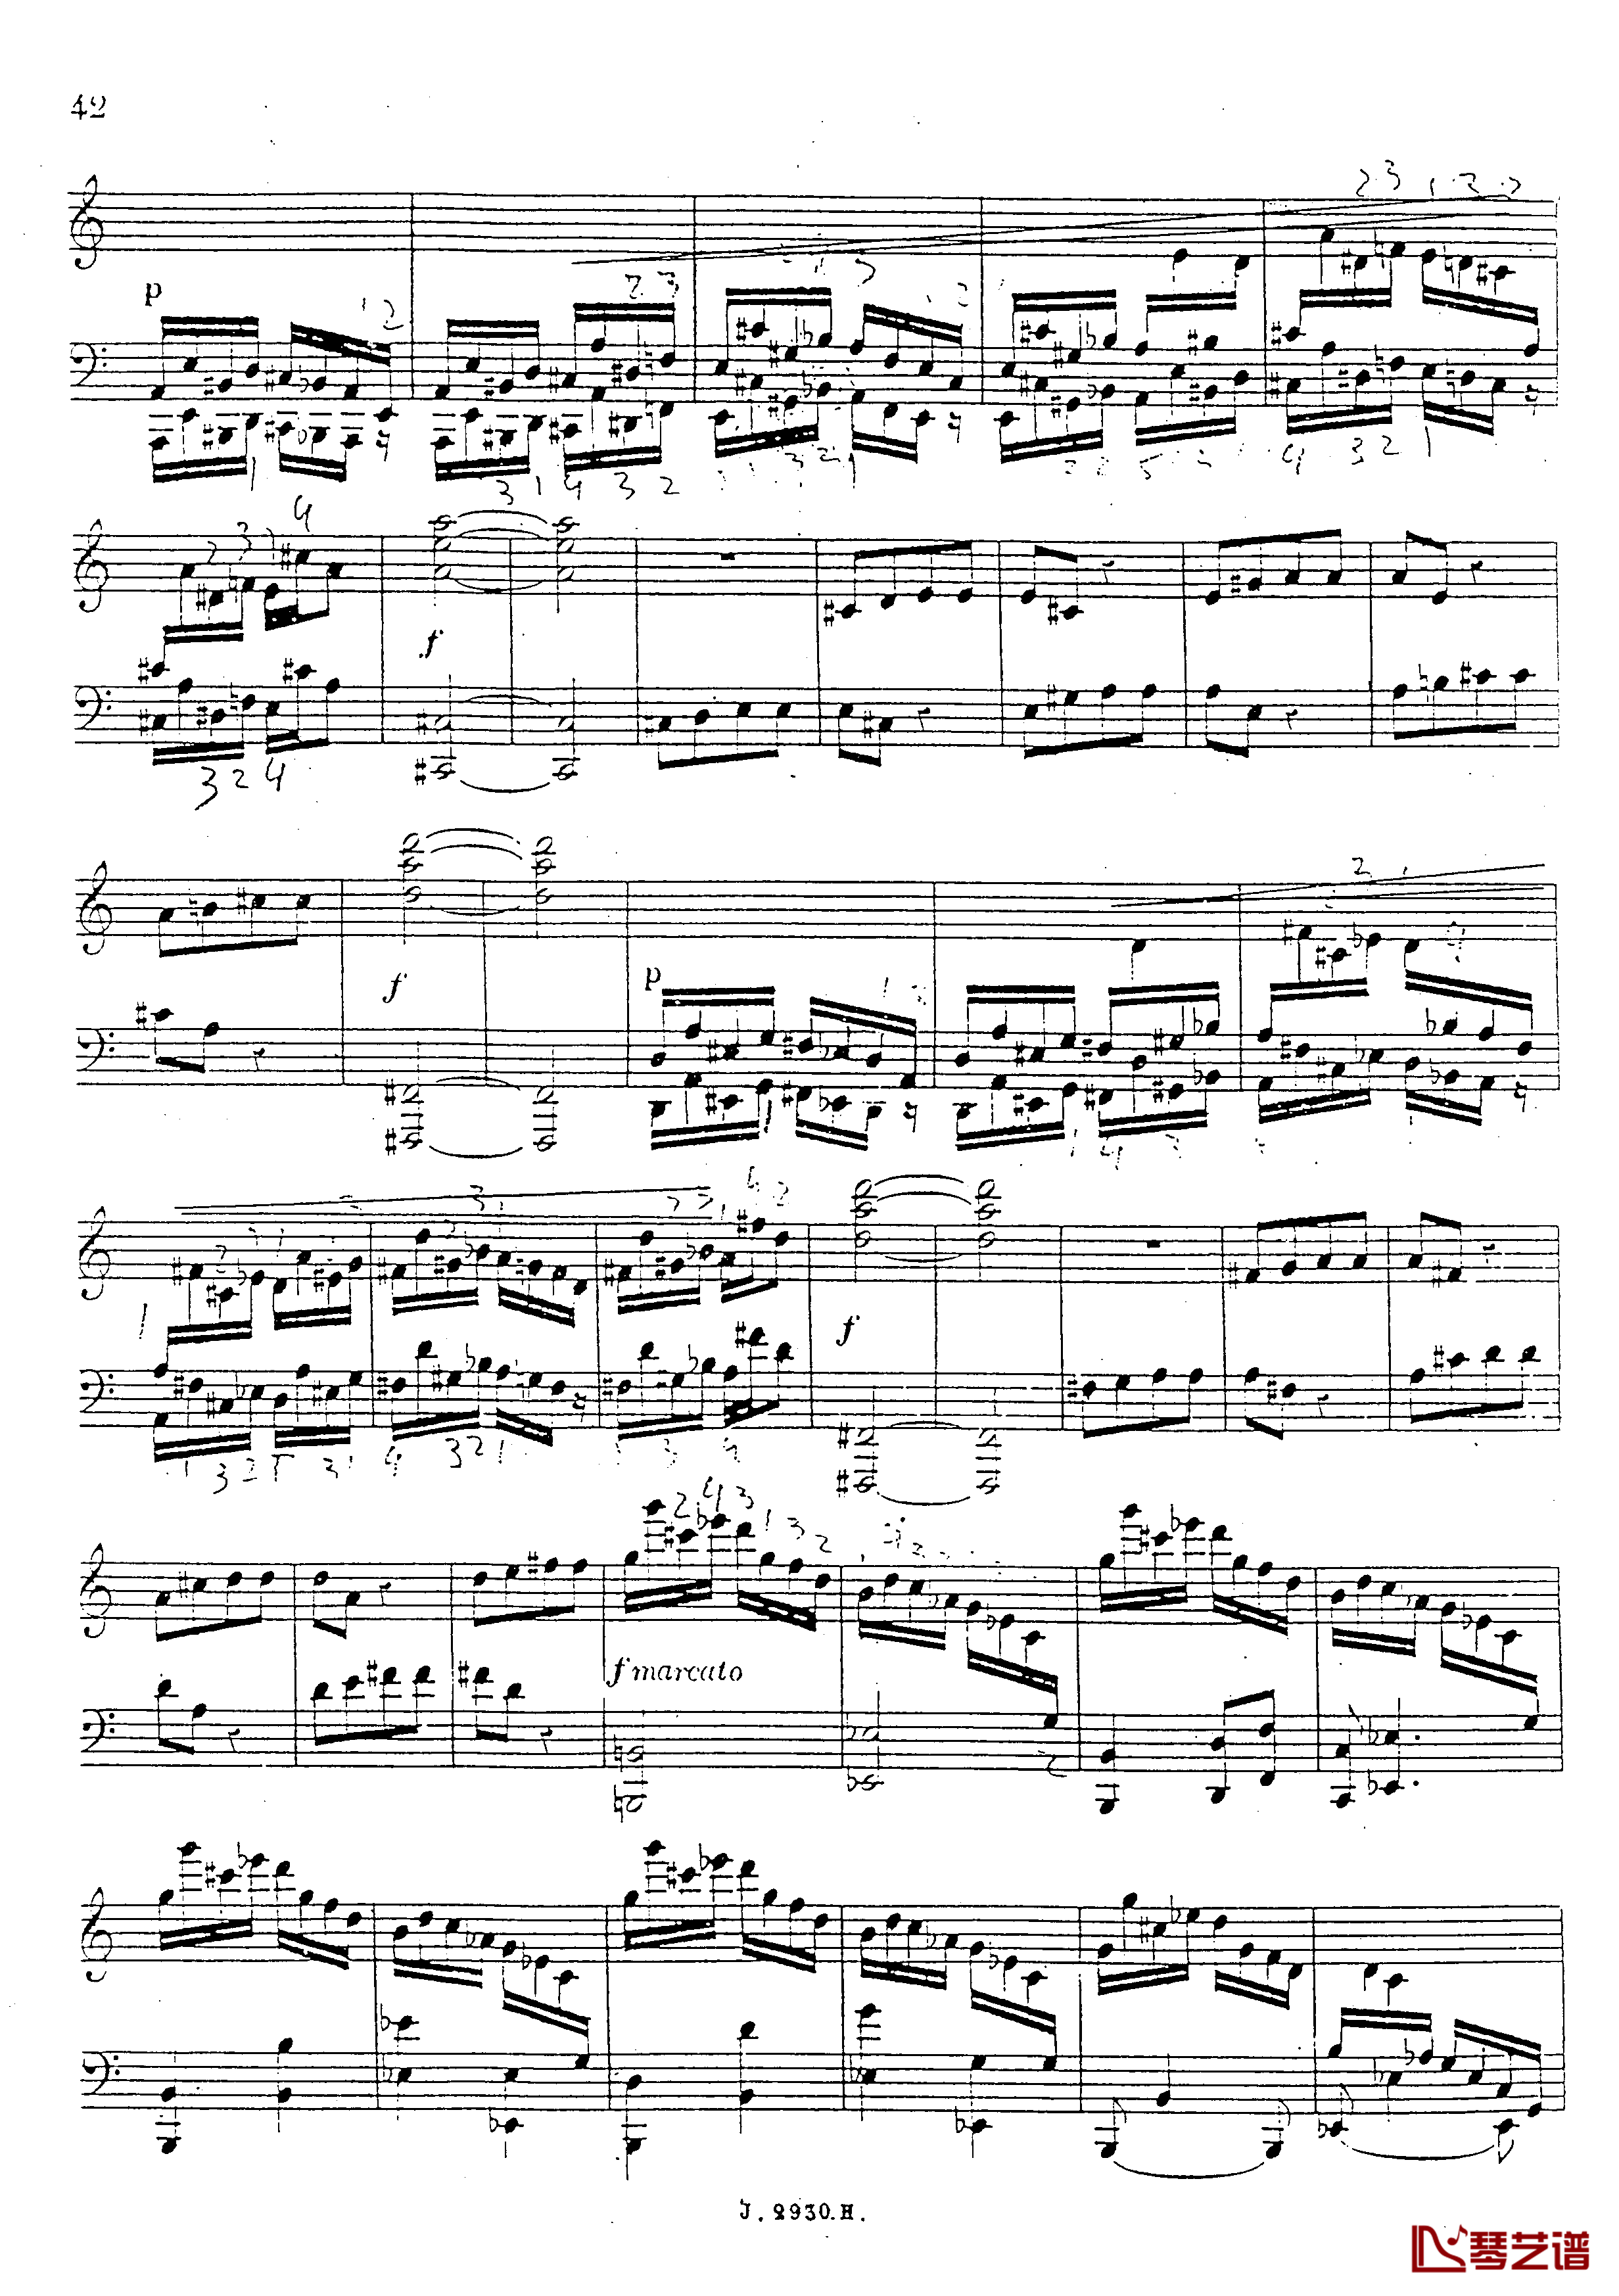 a小调第四钢琴奏鸣曲钢琴谱-安东 鲁宾斯坦- Op.10043